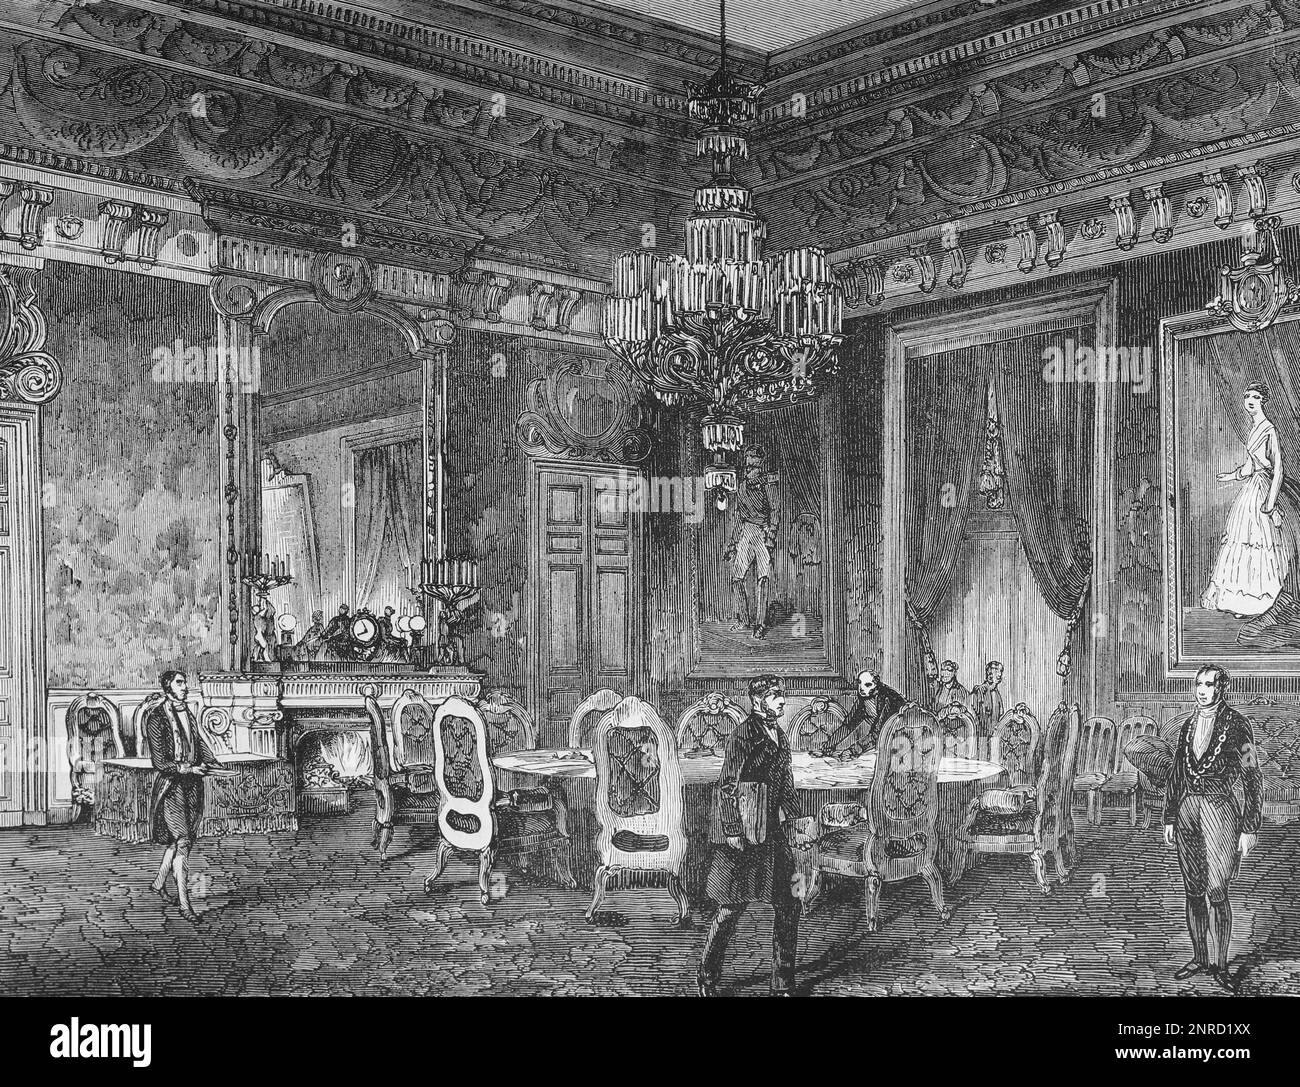 La Sala degli Ambasciatori, Parigi. La sede del Congresso di Parigi nel 1856 dove ebbe luogo la firma del Trattato di Parigi che portò alla fine della guerra di Crimea. Illustrazione in bianco e nero Foto Stock